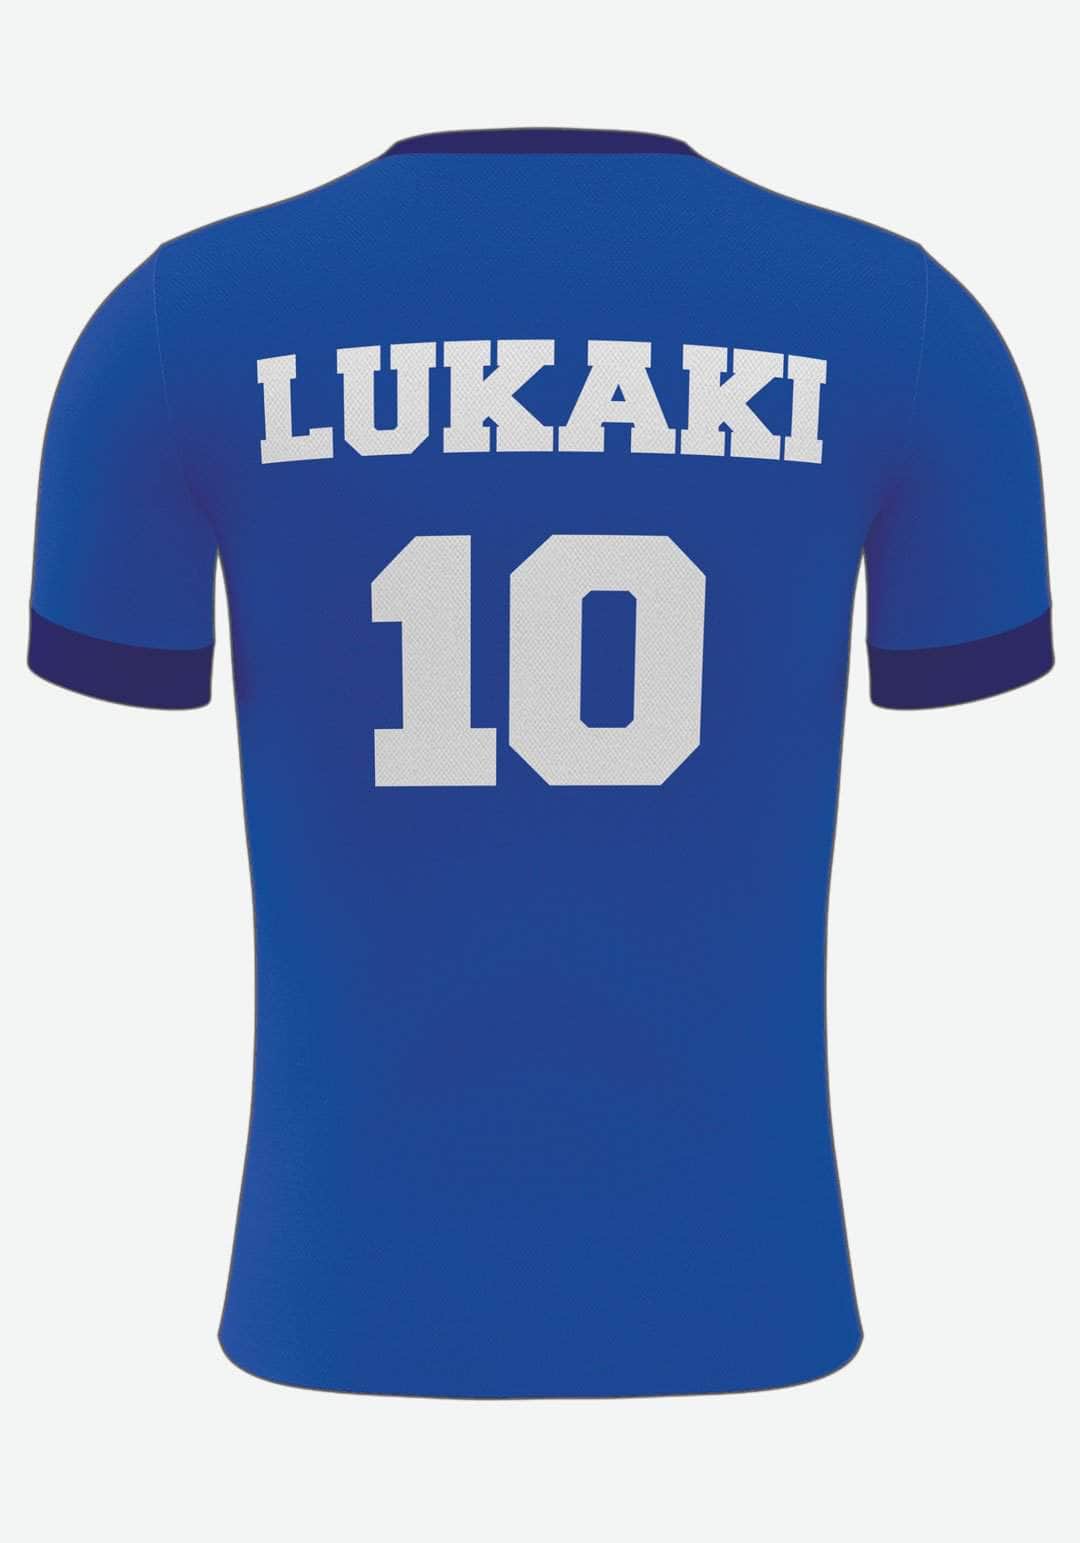 Se Chelsea Fodboldplakat - med eget navn og nummer, 21x30 hos Lukaki.dk